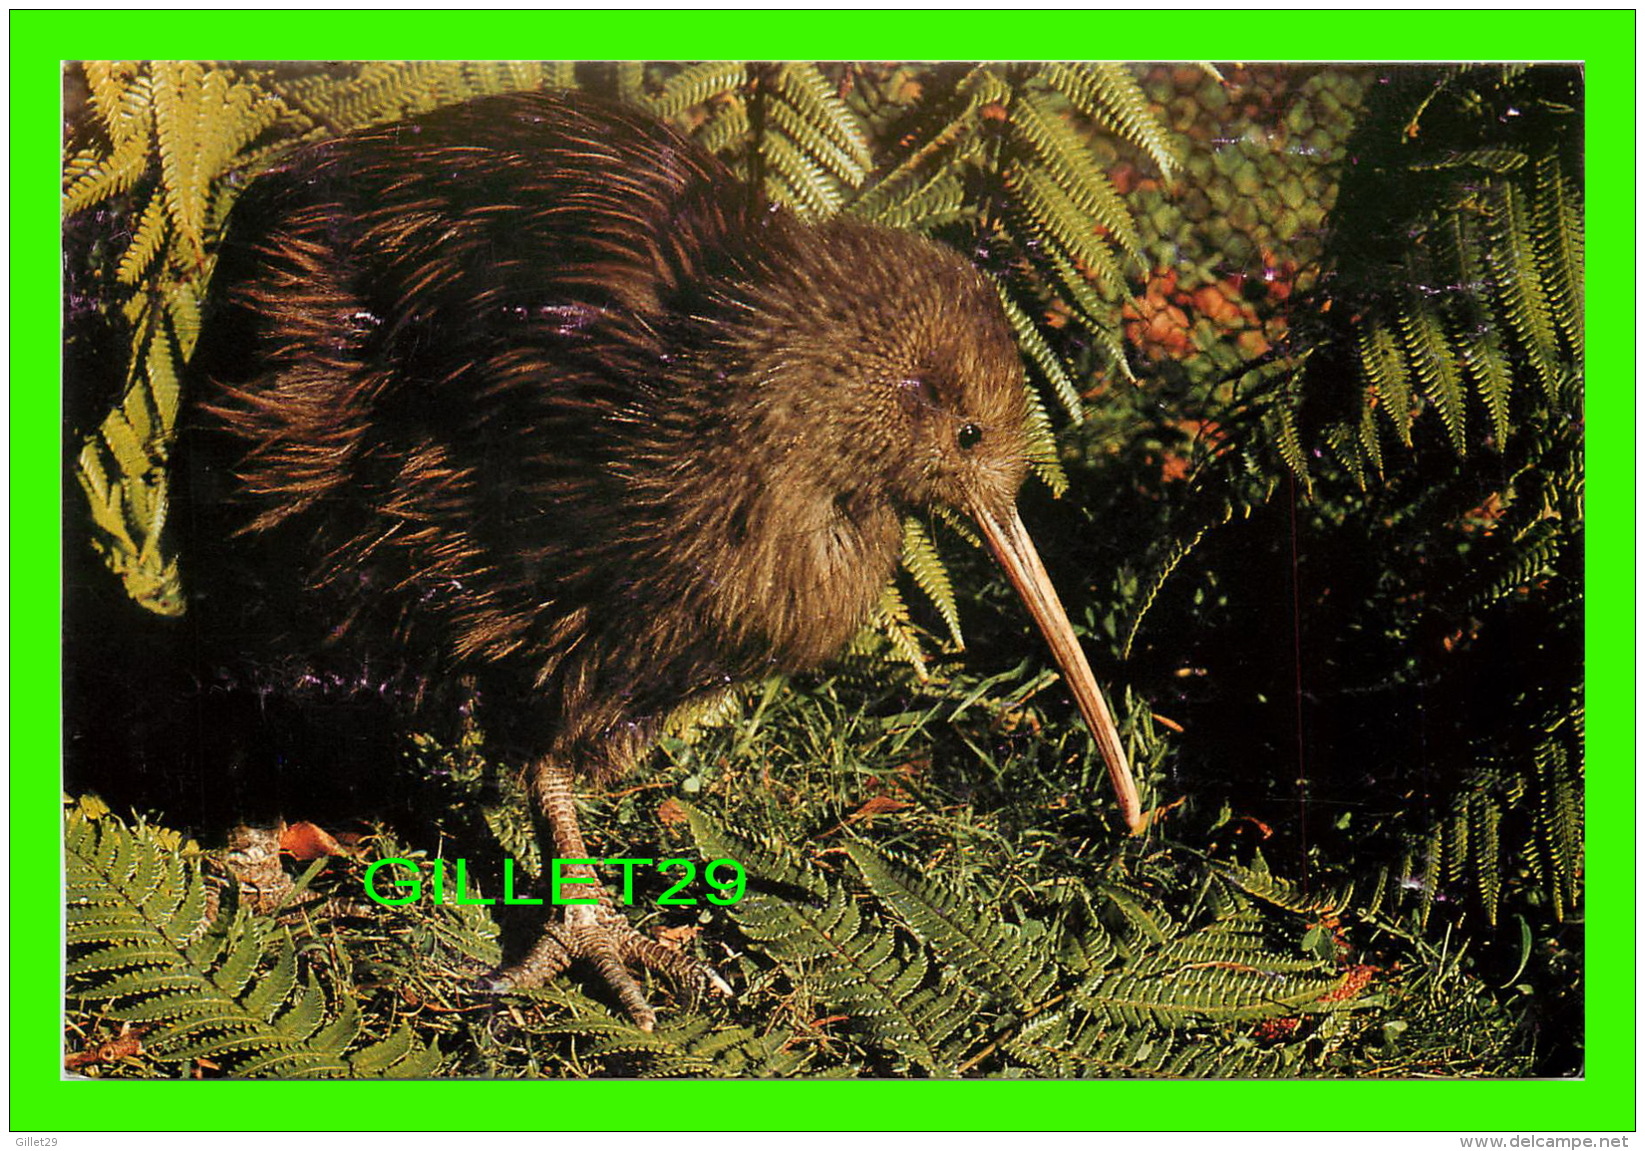 OISEAUX - NEW ZEALAND'S NATIONAL BIRDS KIWI - TRAVEL IN 1988 - - Oiseaux